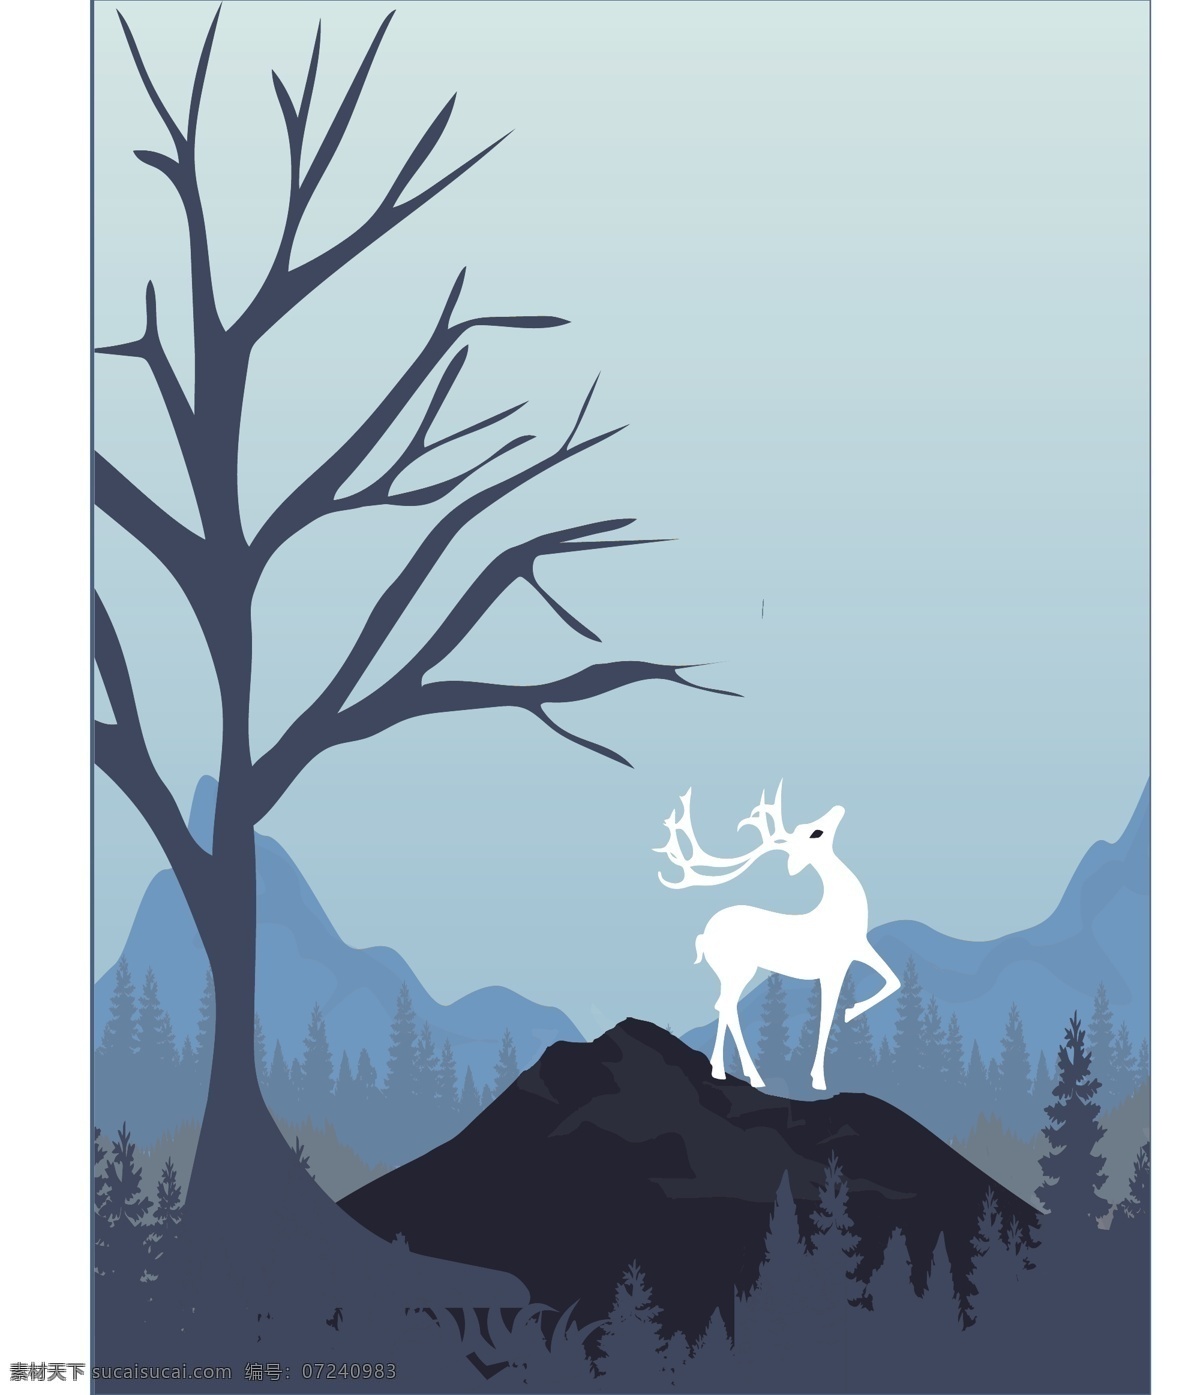 蓝色 北欧 森林 麋鹿 装饰画 麋鹿装饰画 蓝色装饰画 森林装饰画 墙画 壁画 挂画 北欧风